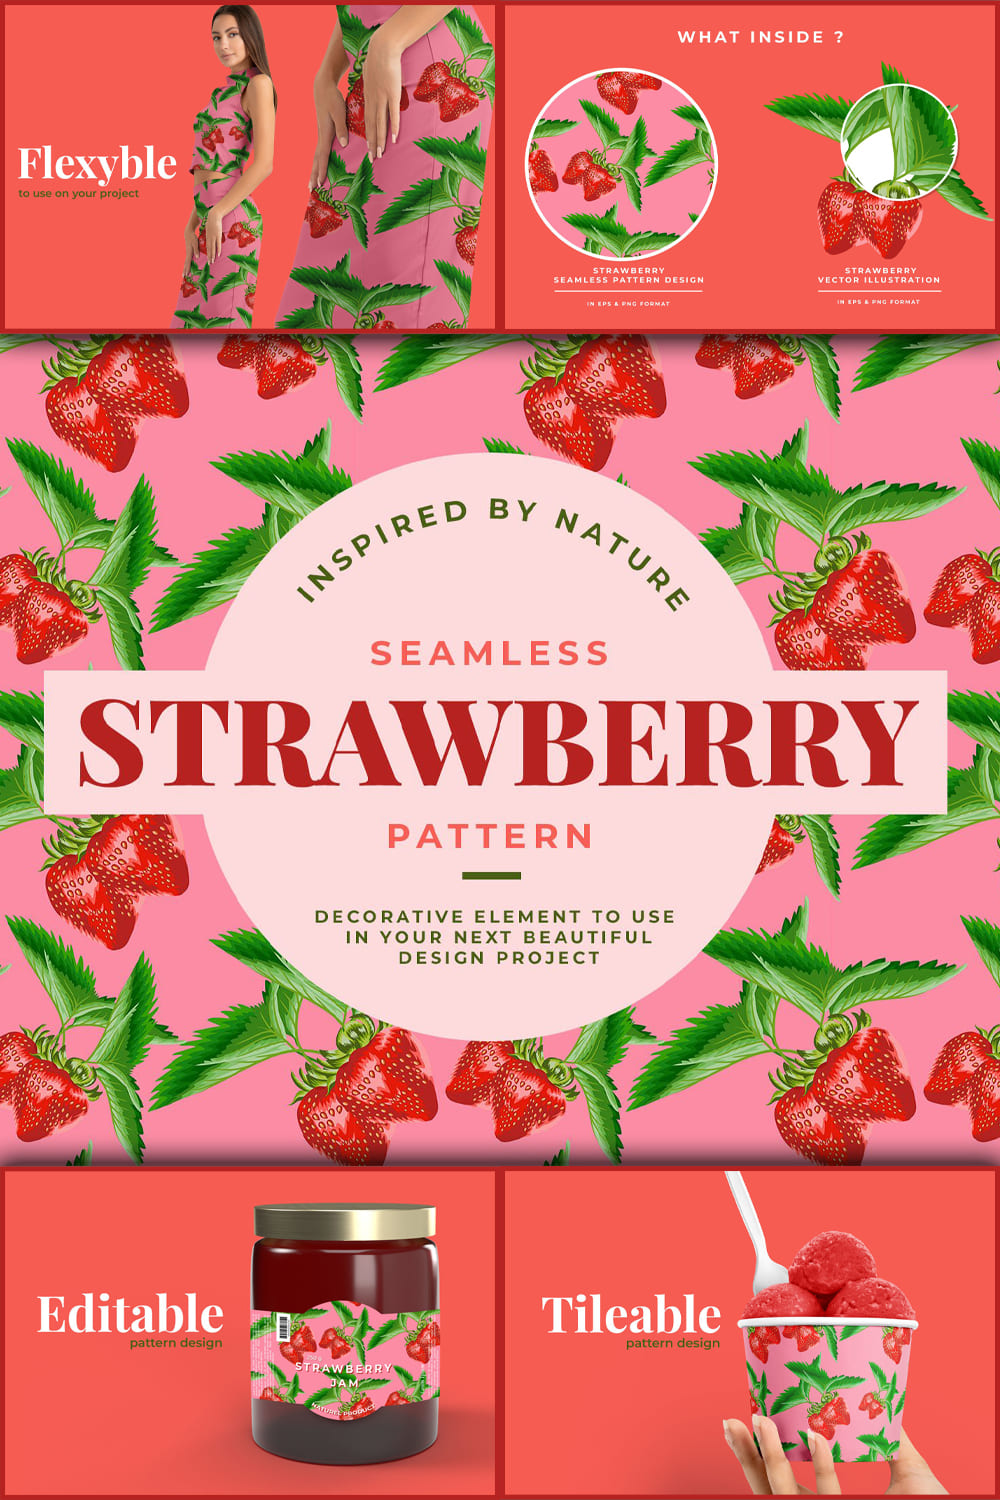 Strawberry seamless pattern.